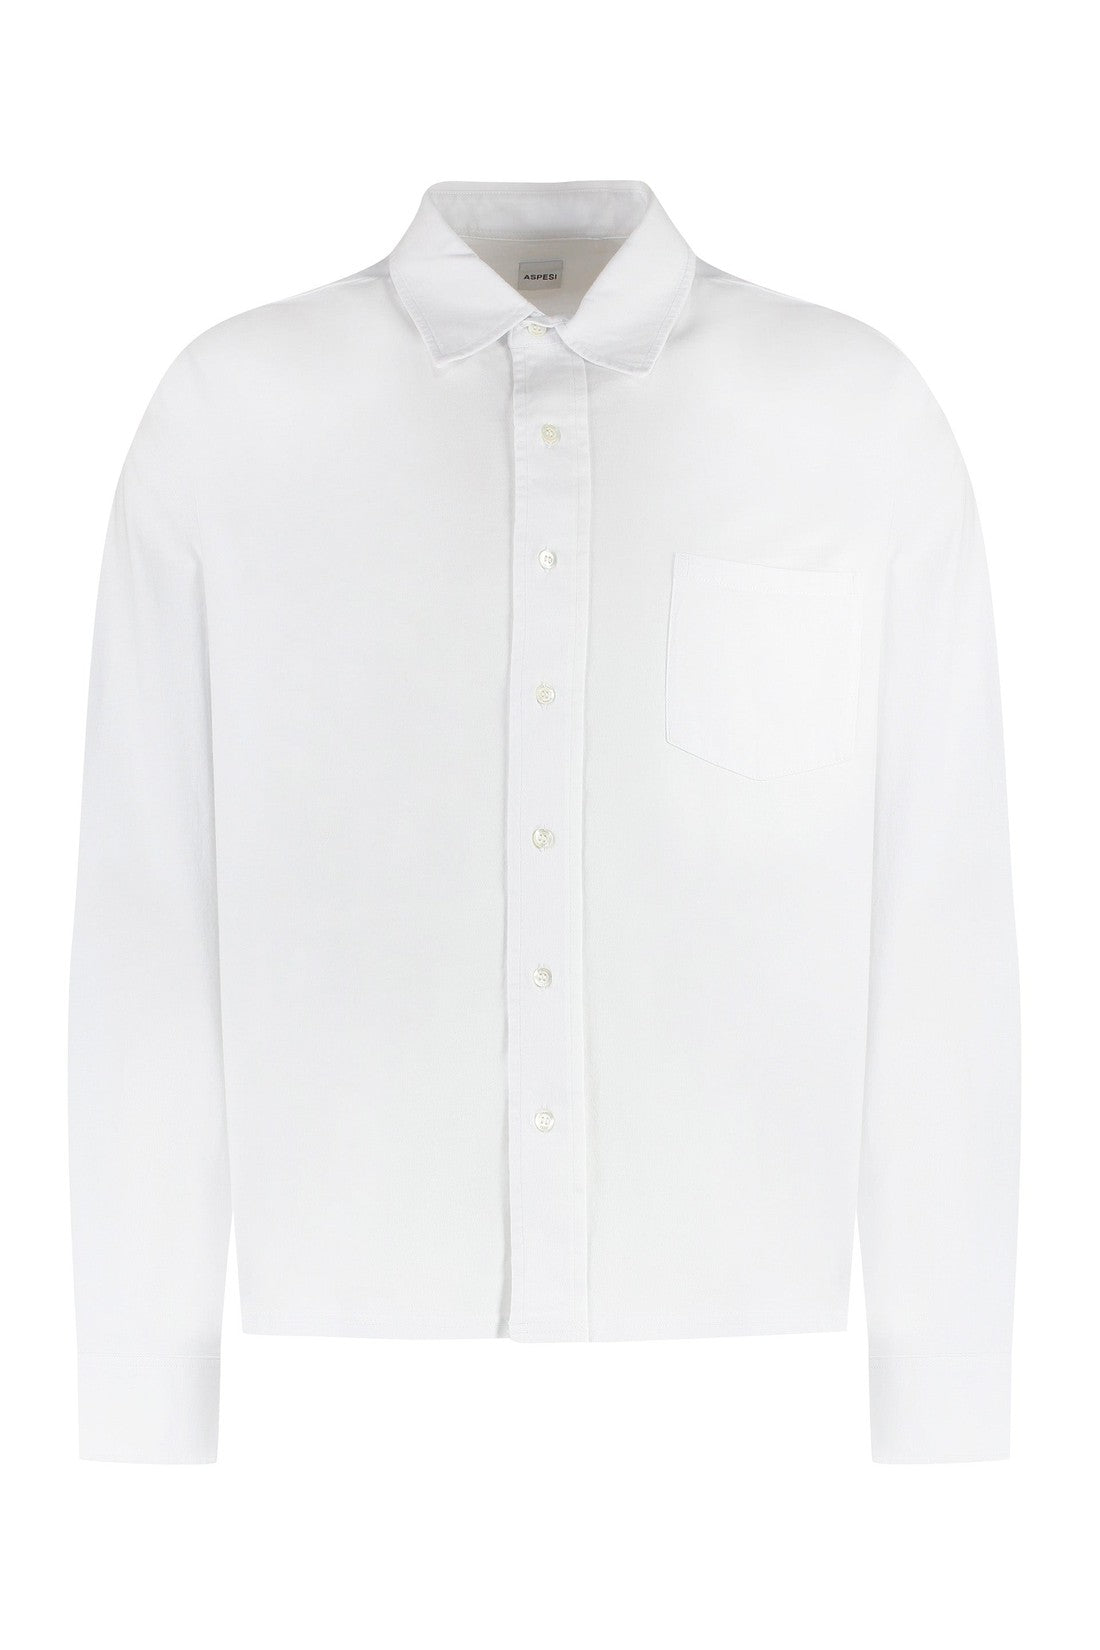 Aspesi-OUTLET-SALE-Cotton shirt-ARCHIVIST